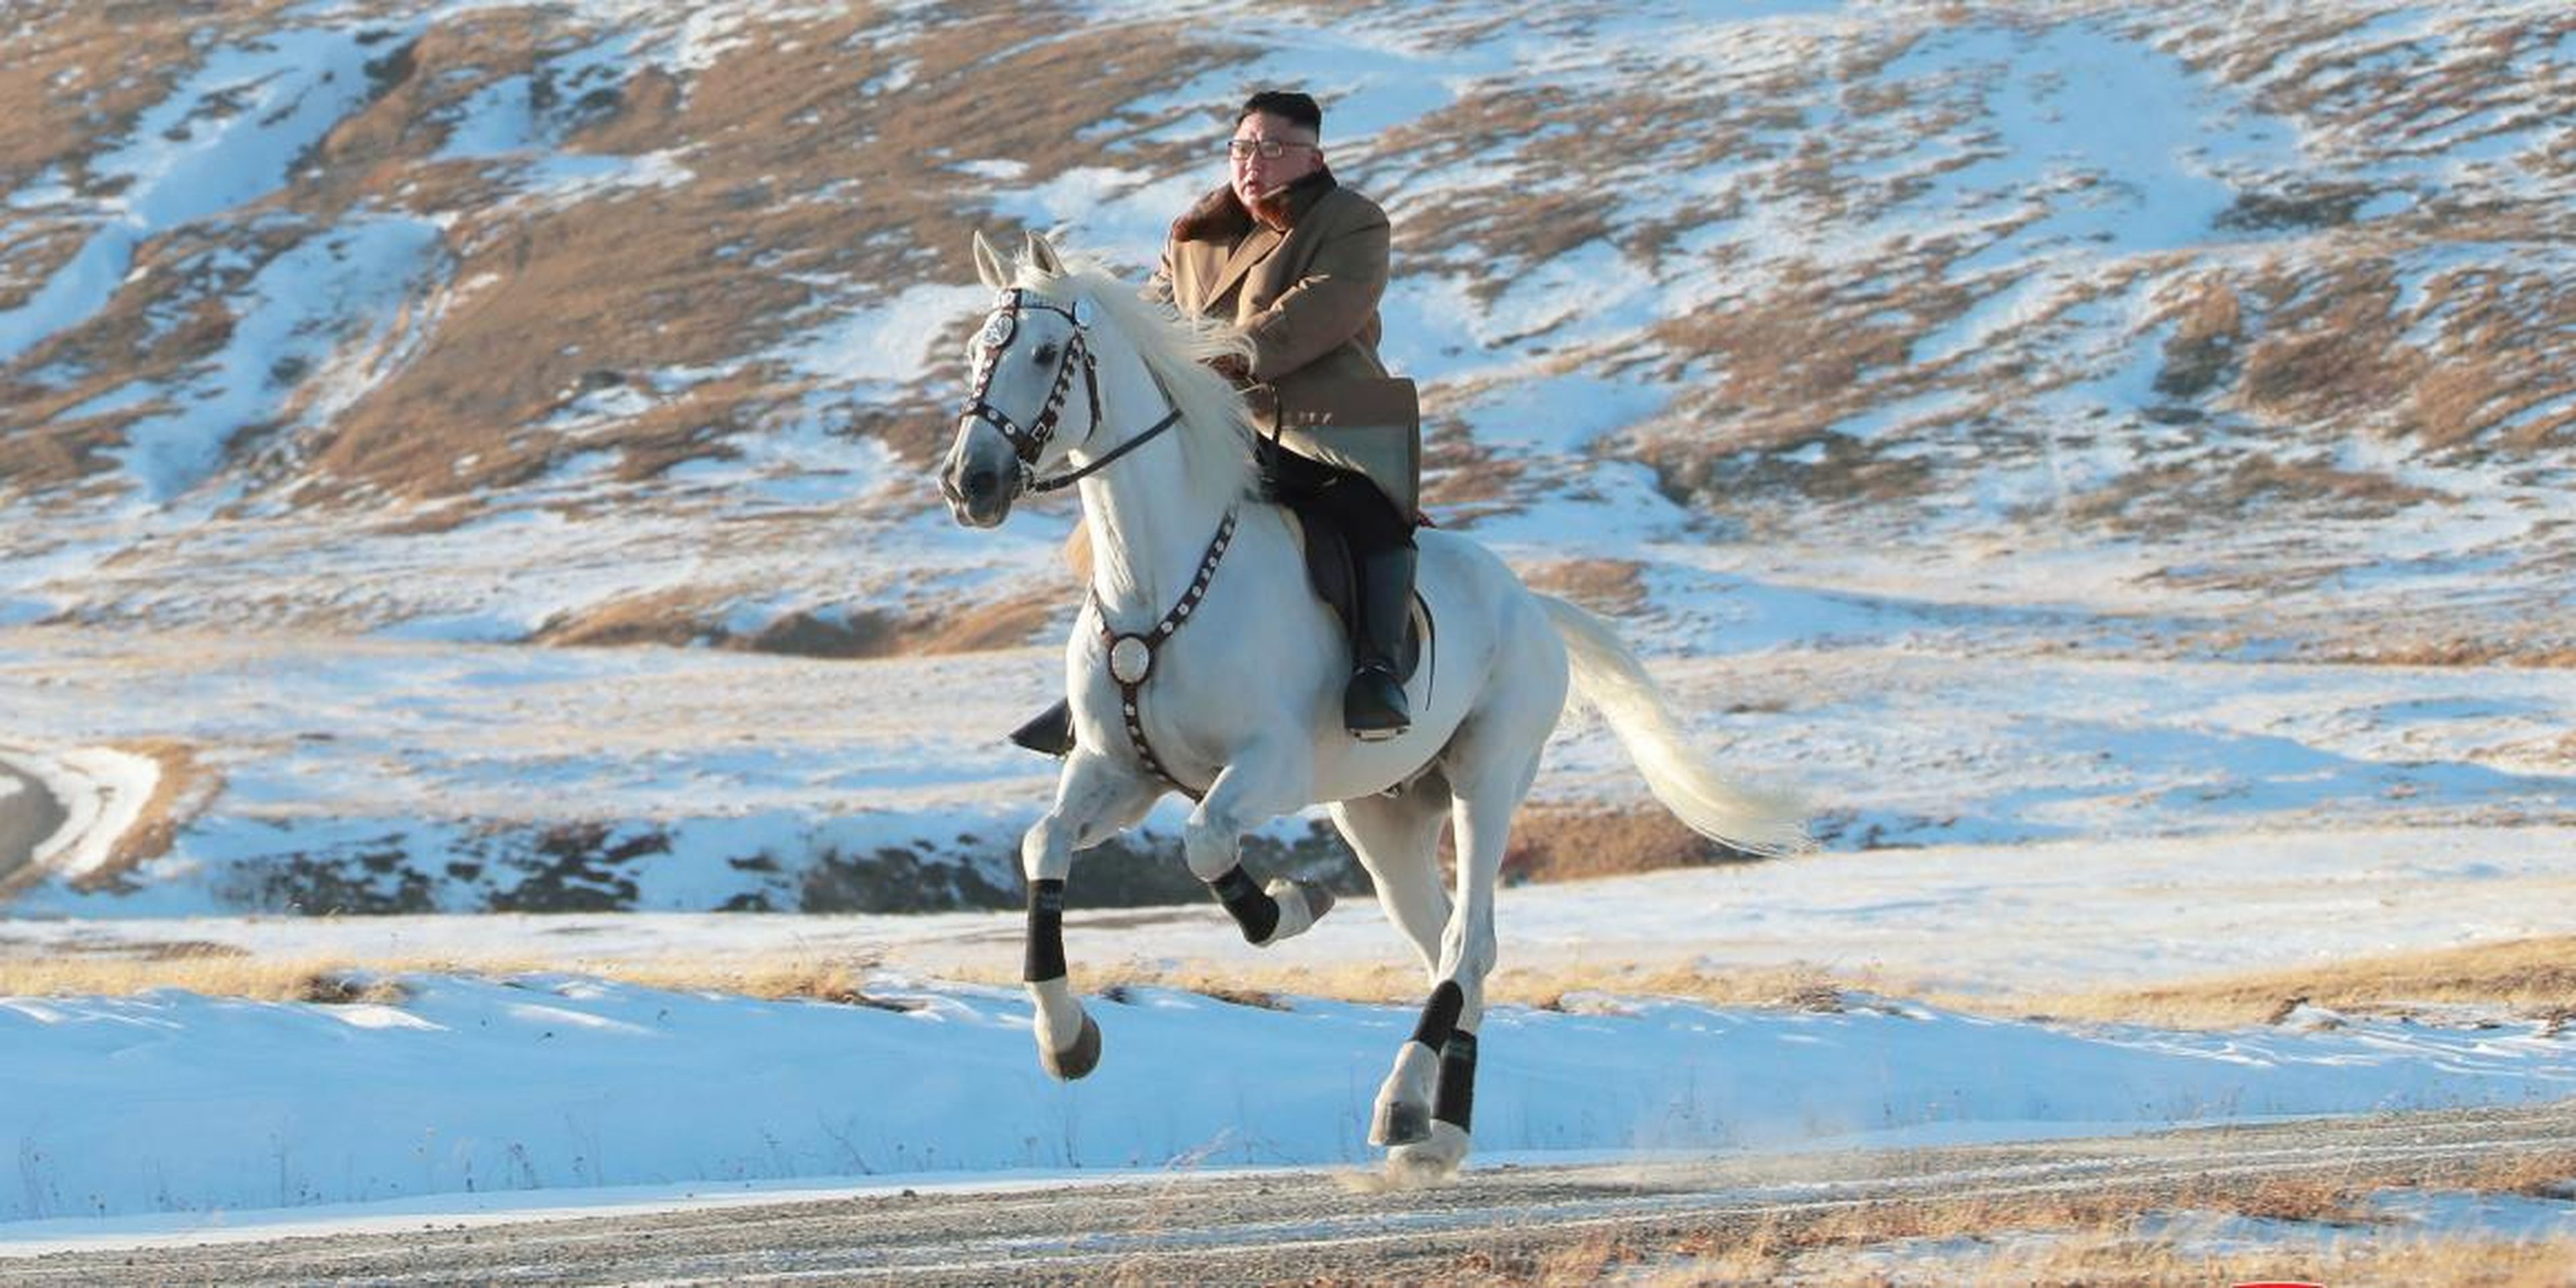 El líder norcoreano Kim Jong Un monta a caballo en el monte Paektu, repleto de nieve, en esta imagen propagandística.